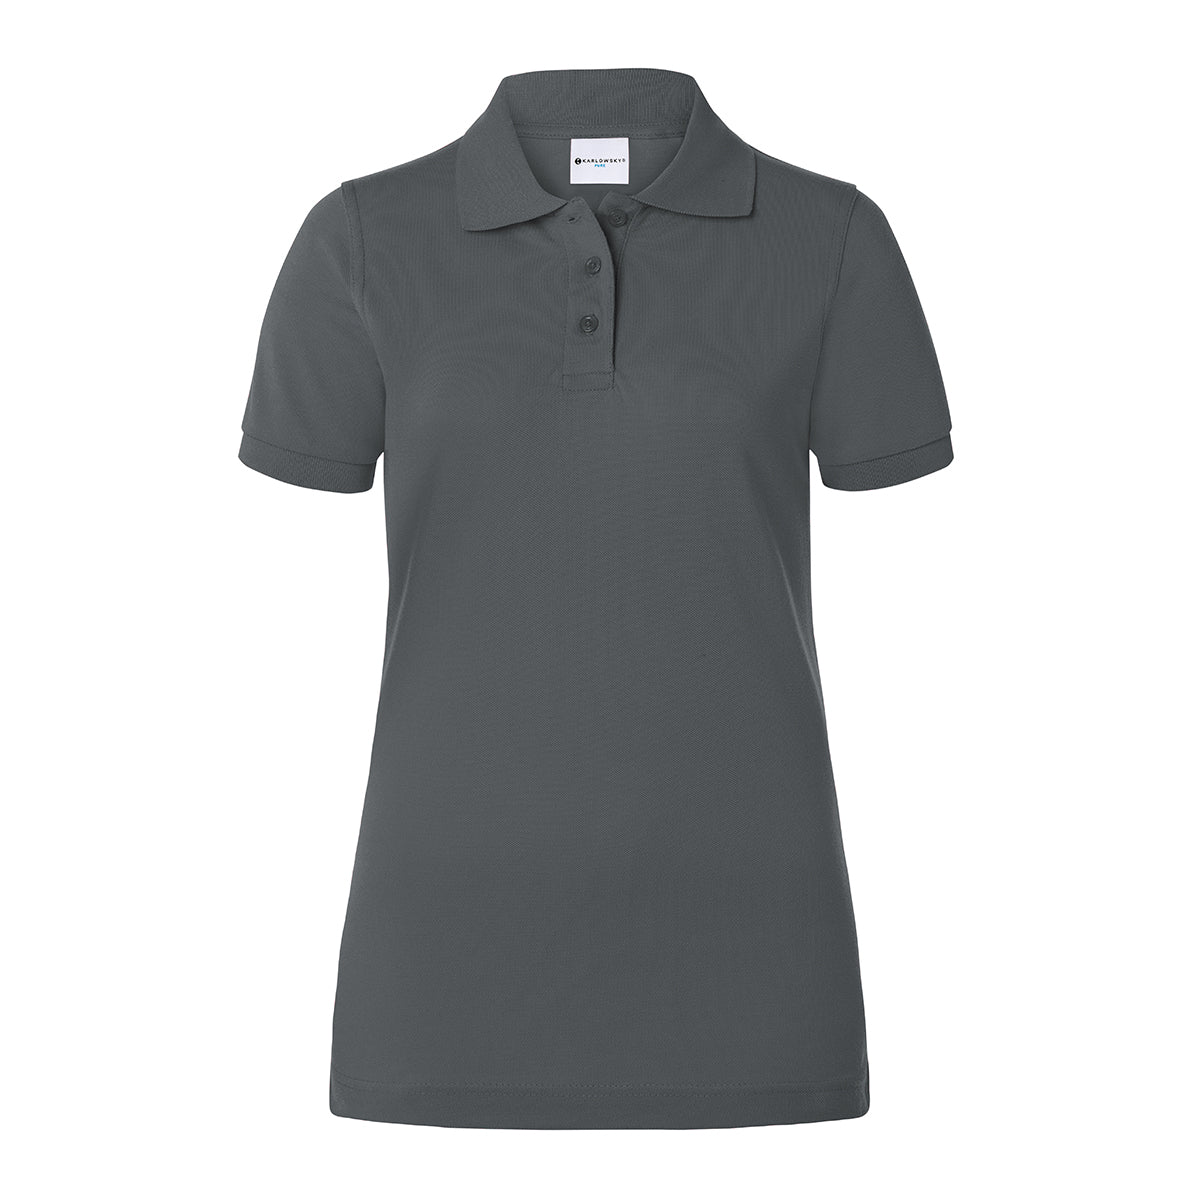 Karlowsky - Arbejdsbeklædning Basic Poloshirt til damer - Antracit - Størrelse: M